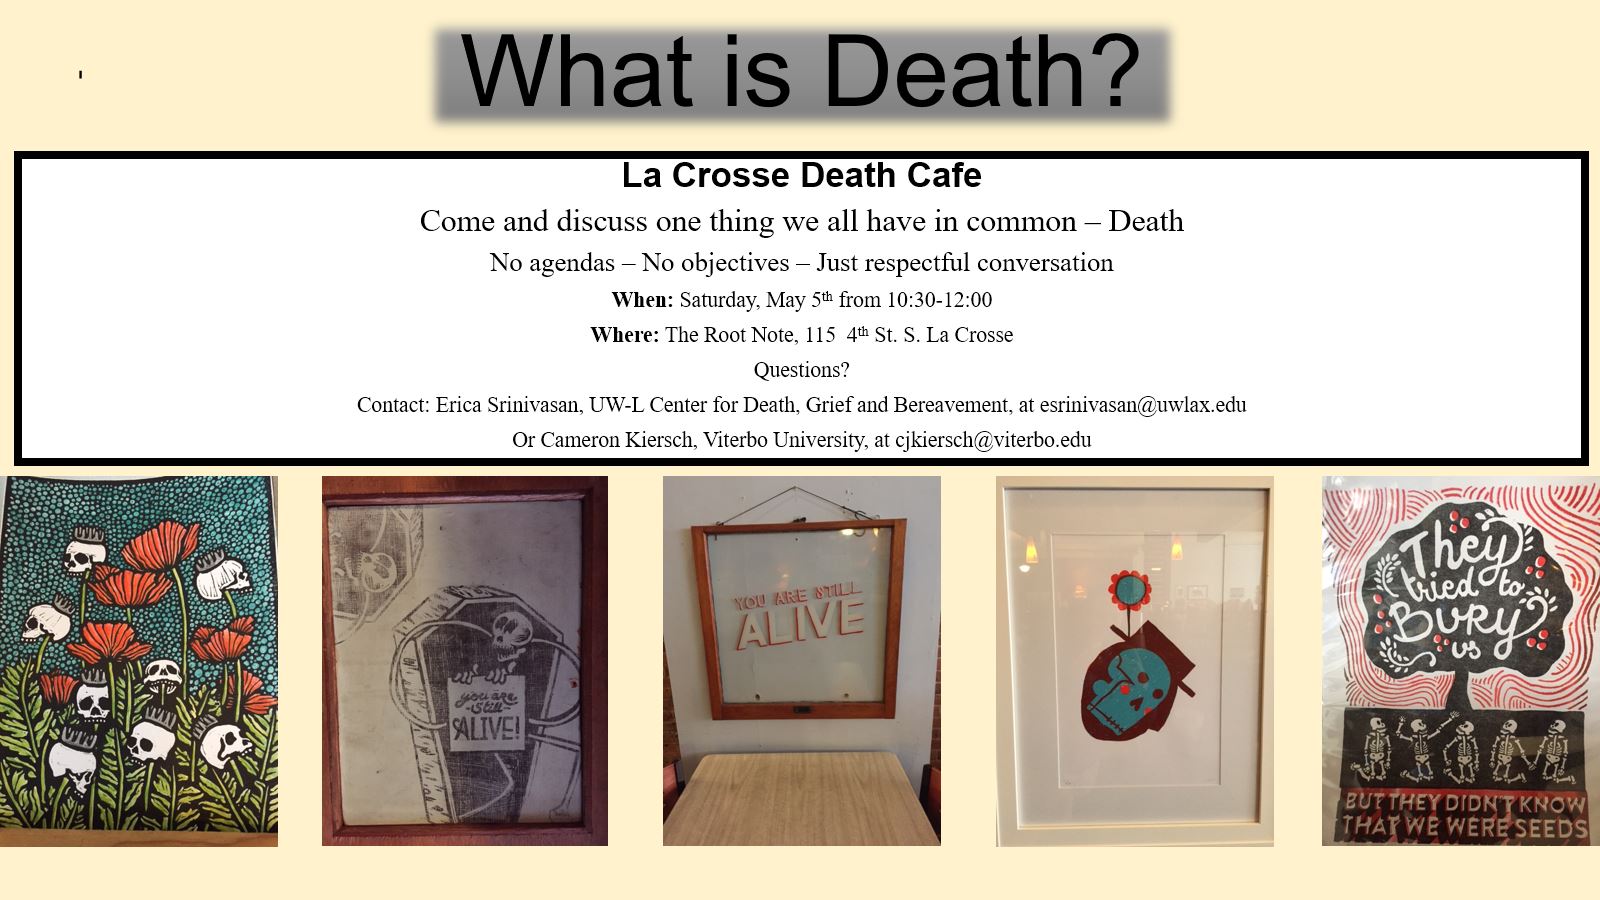 La Crosse Death Cafe